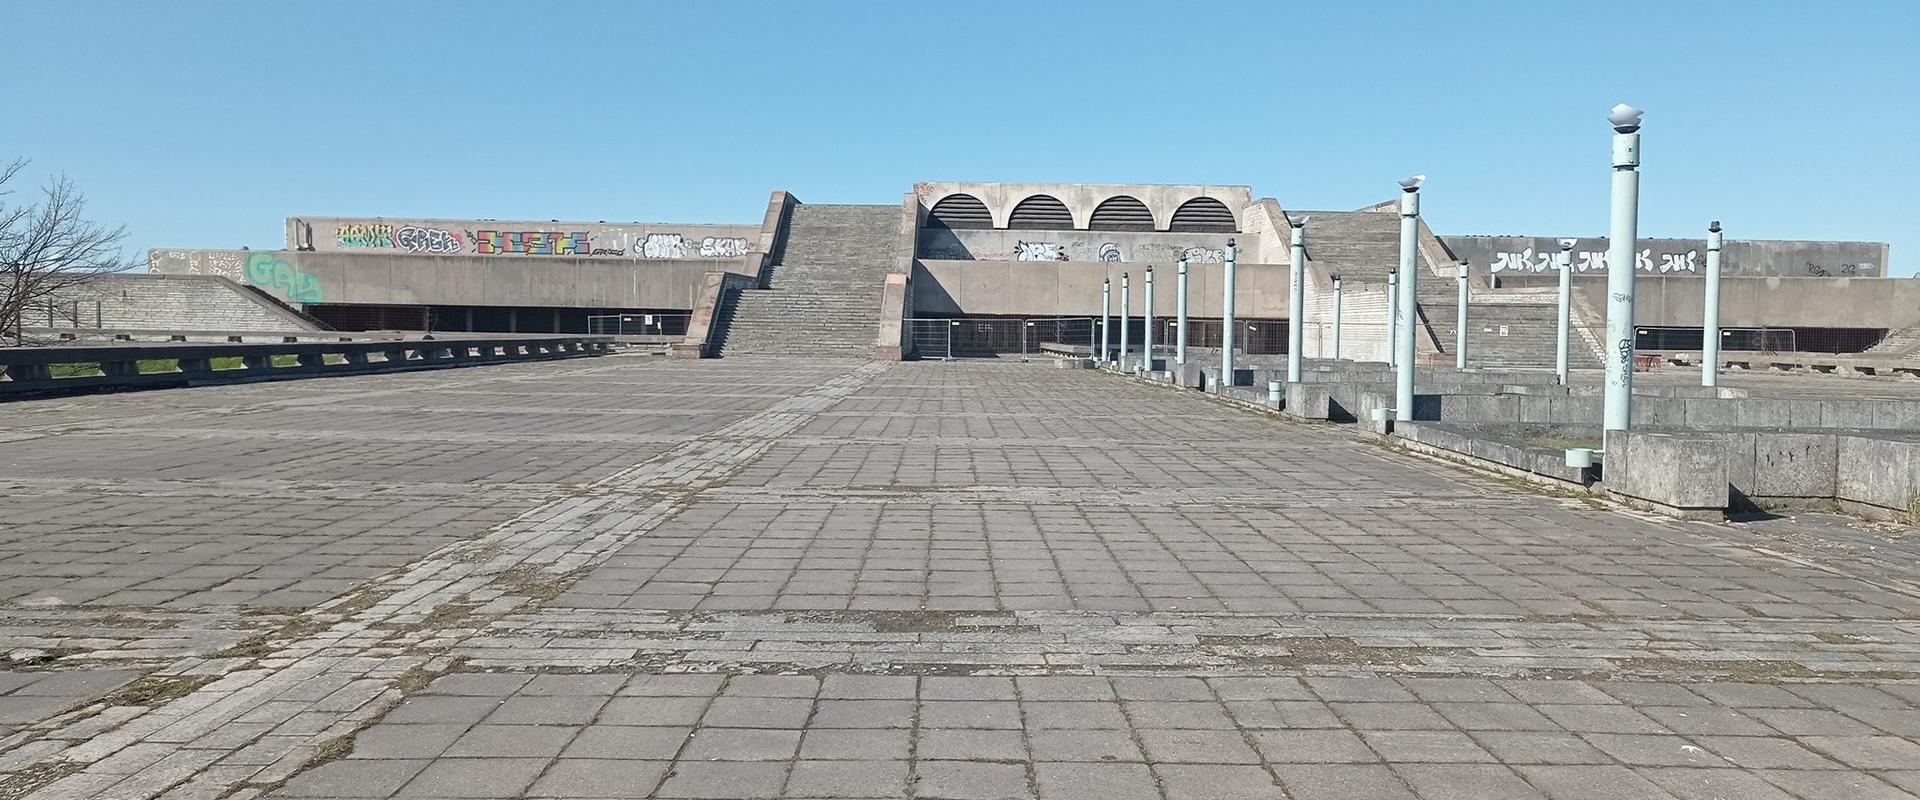 Tallinner Stadthalle